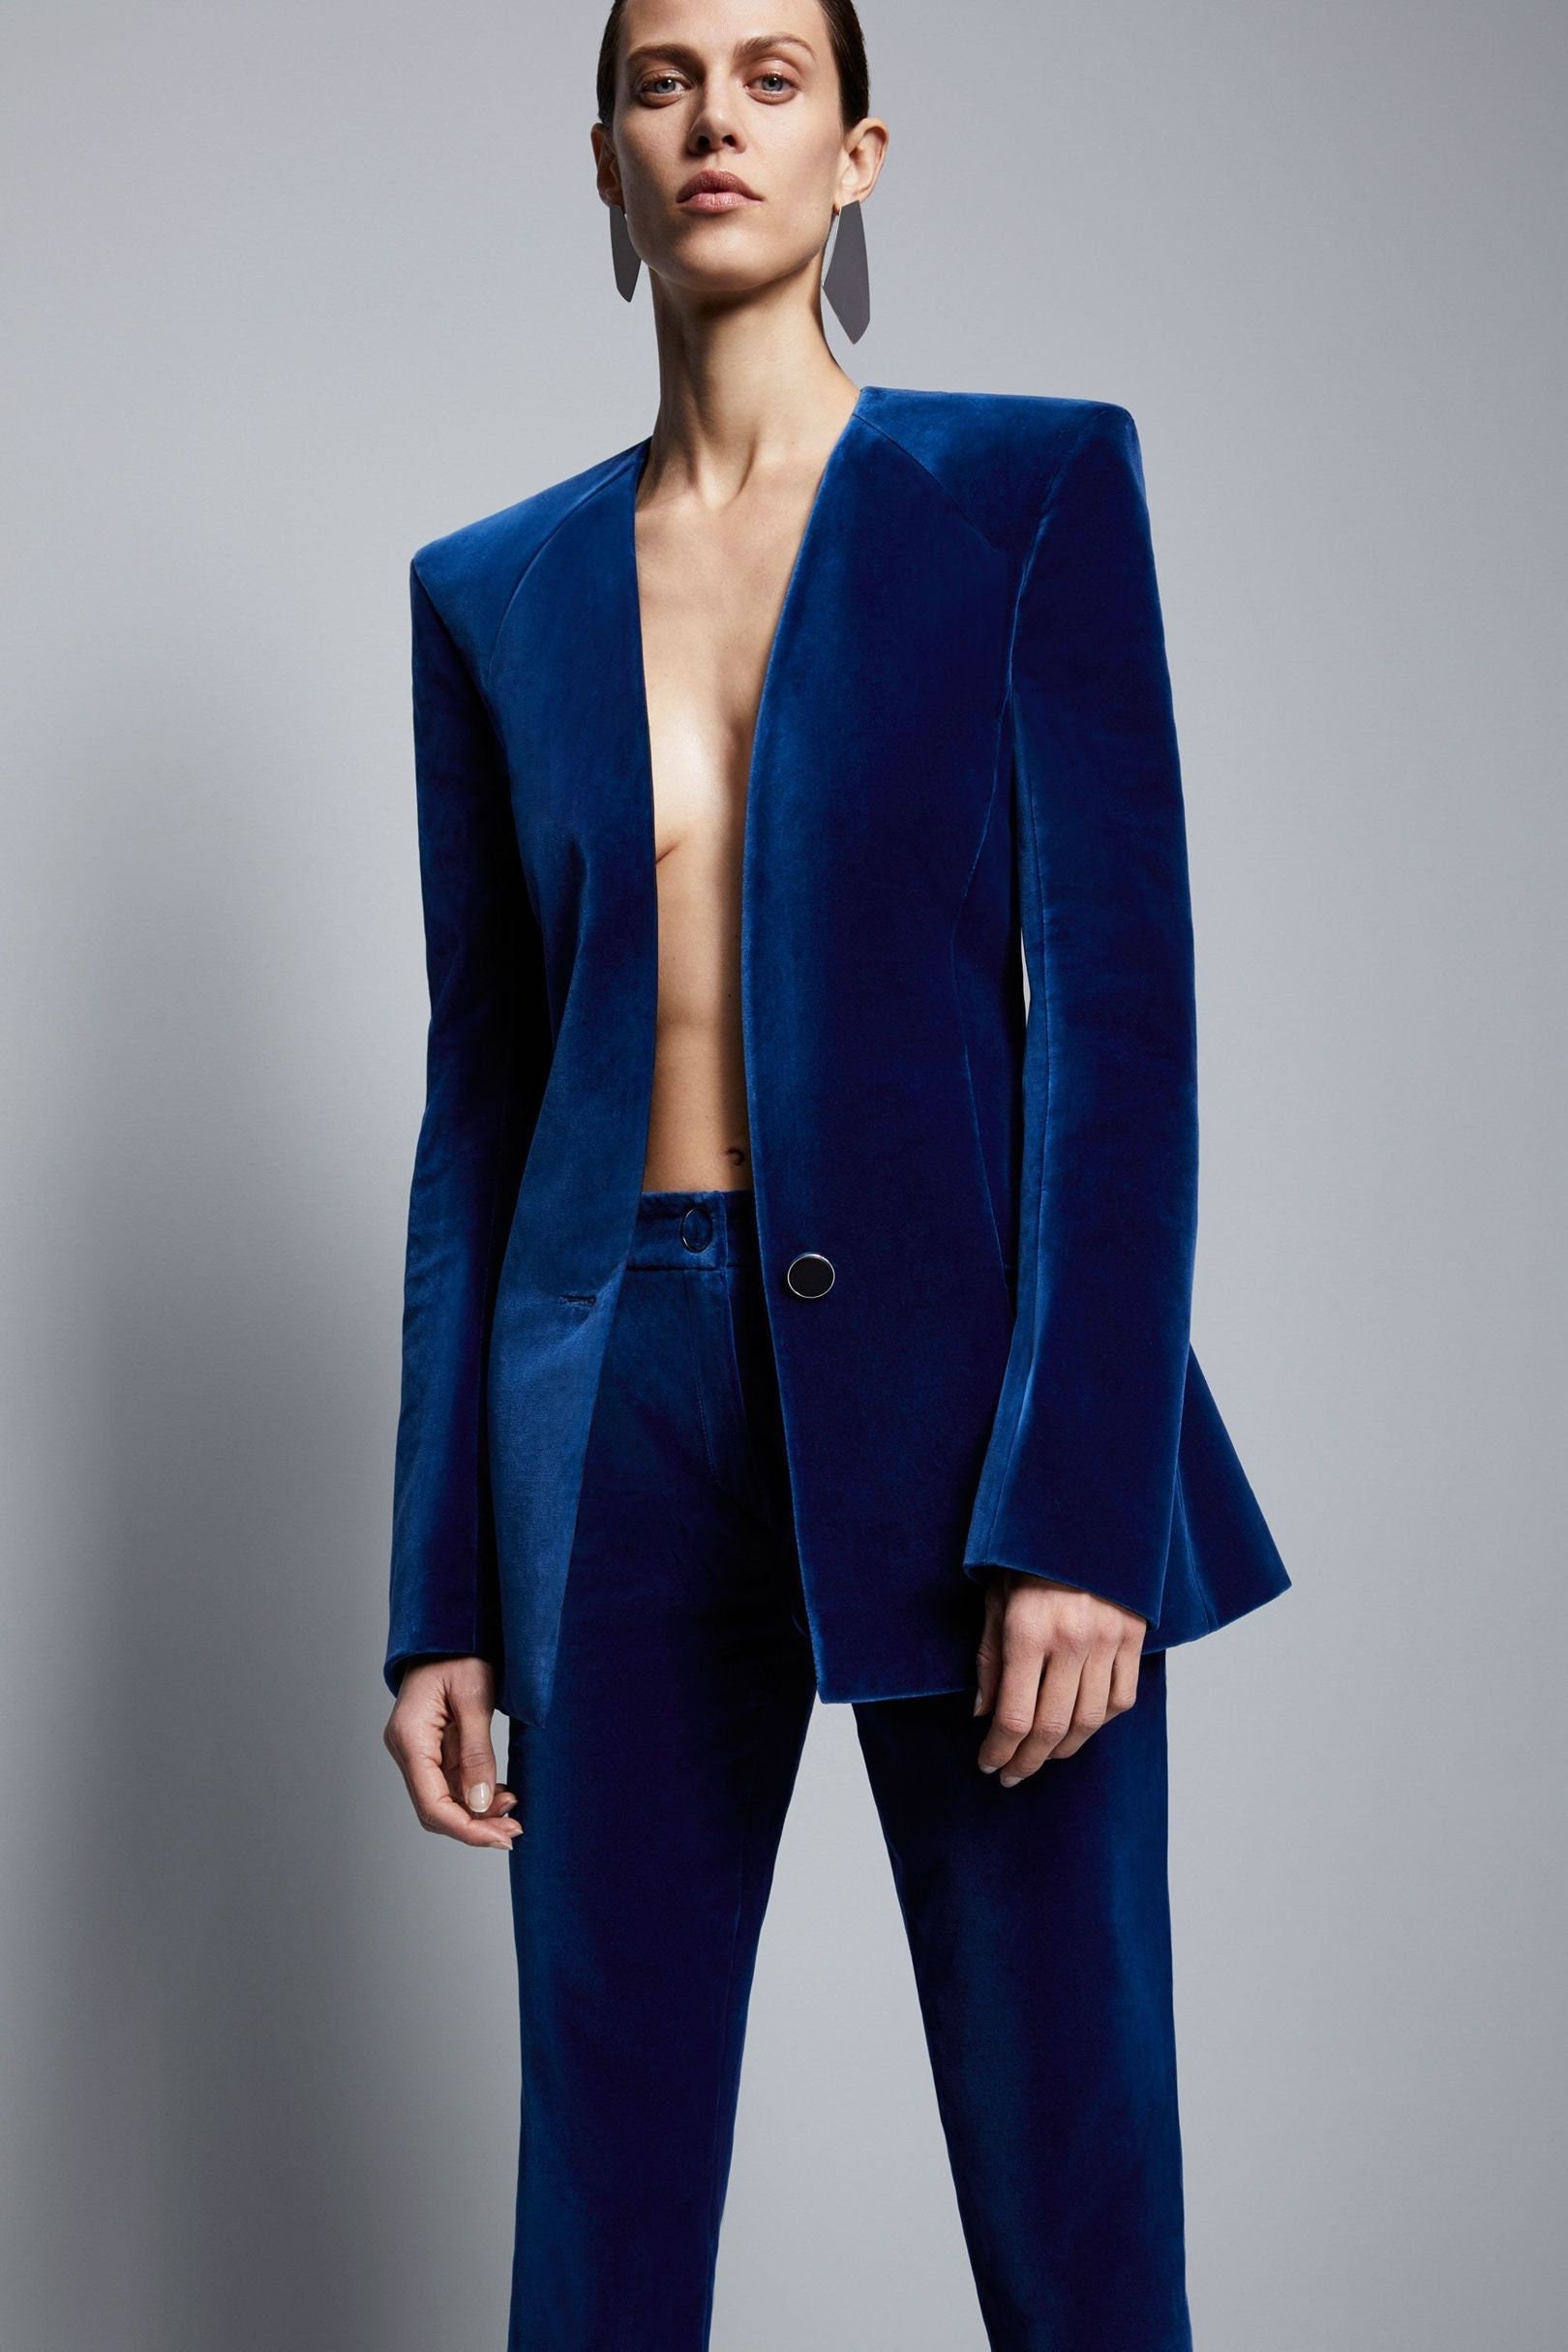 Blue Velvet Suit for Women/ GIRL Pant Suit/women's Tuxedo /women Pant Suit/business  Suit Women/women Tailored Suit/womens Coats Suit Set -  Canada